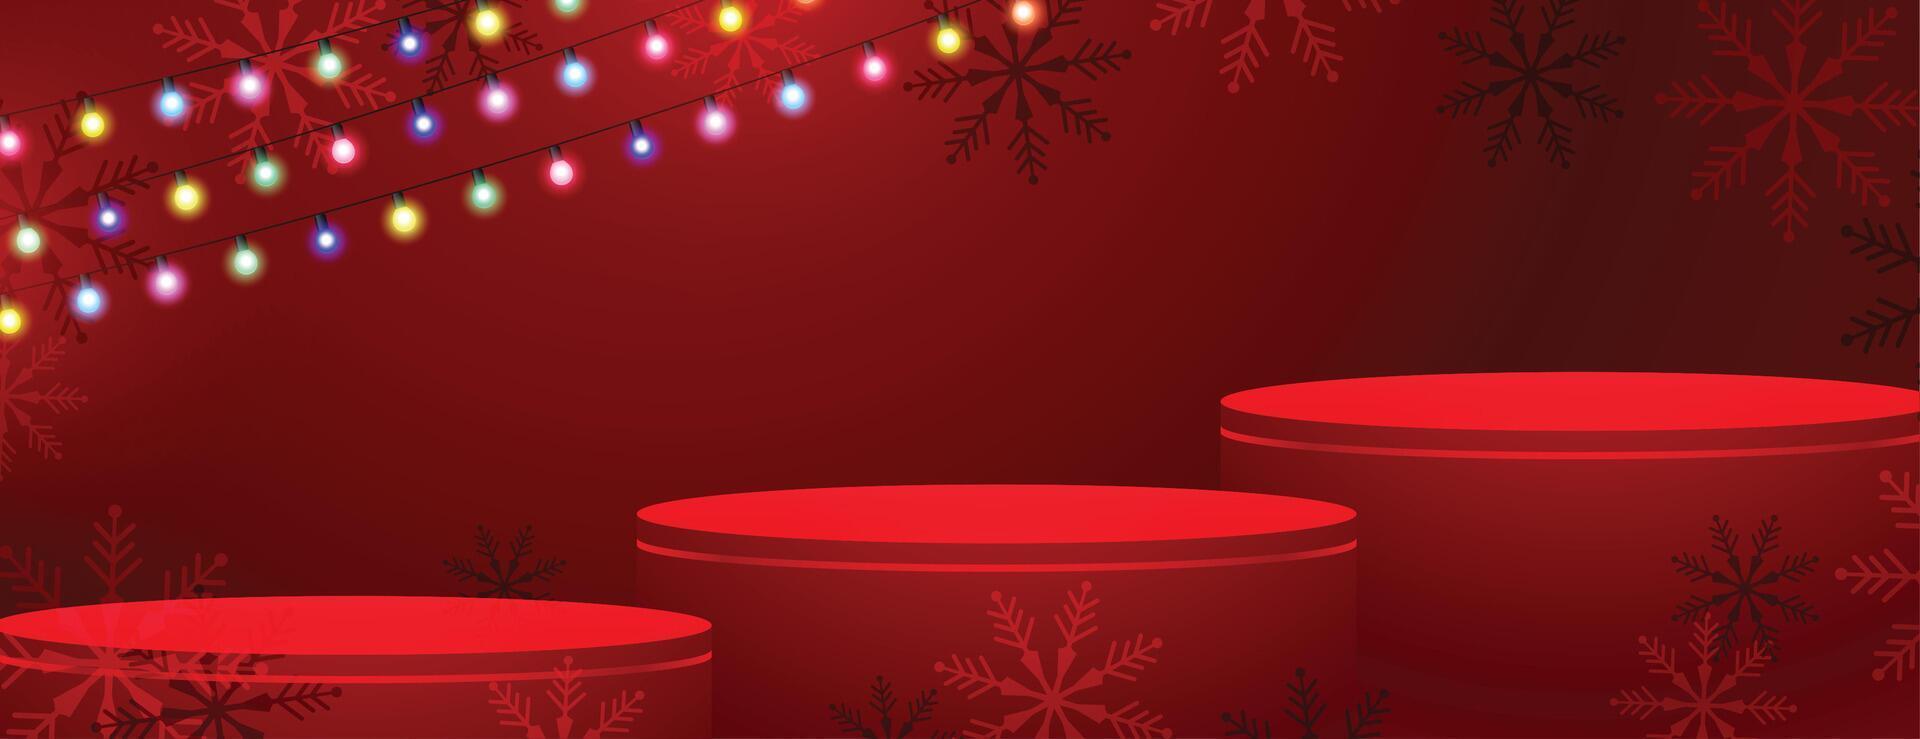 3d pódio plataforma em alegre Natal vermelho bandeira com luz corda vetor